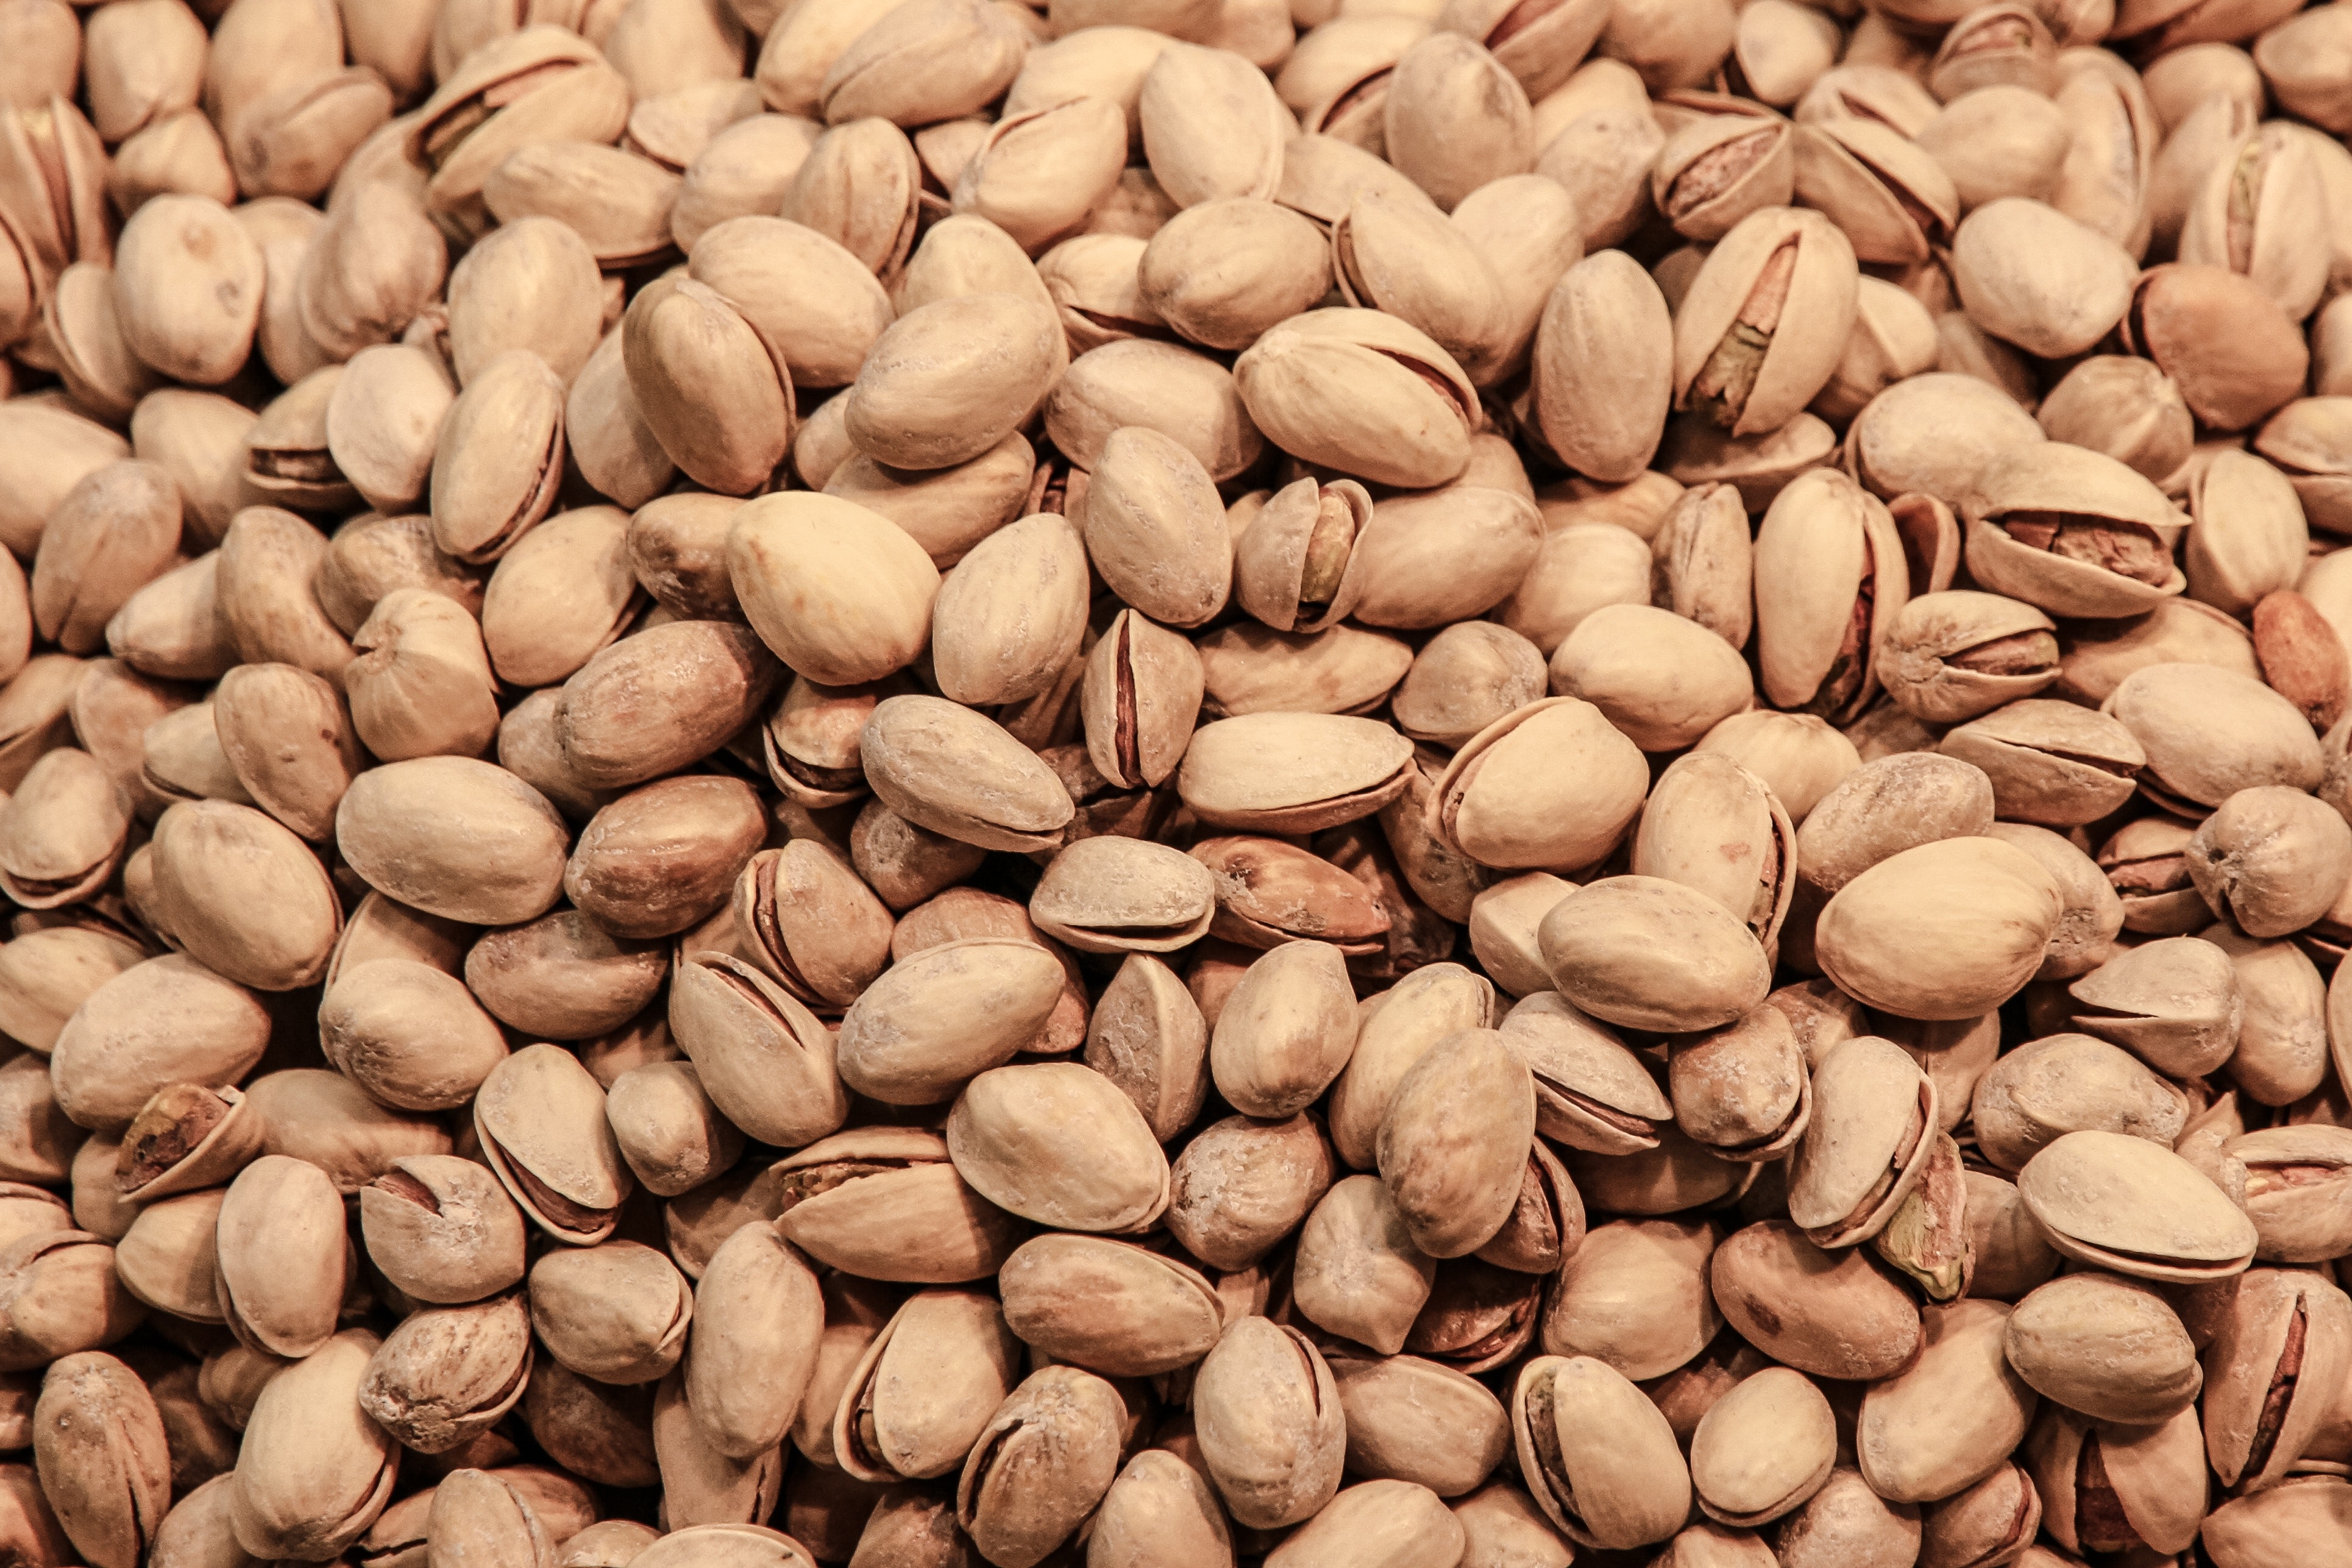 pistachios-paleo-diet-nuts